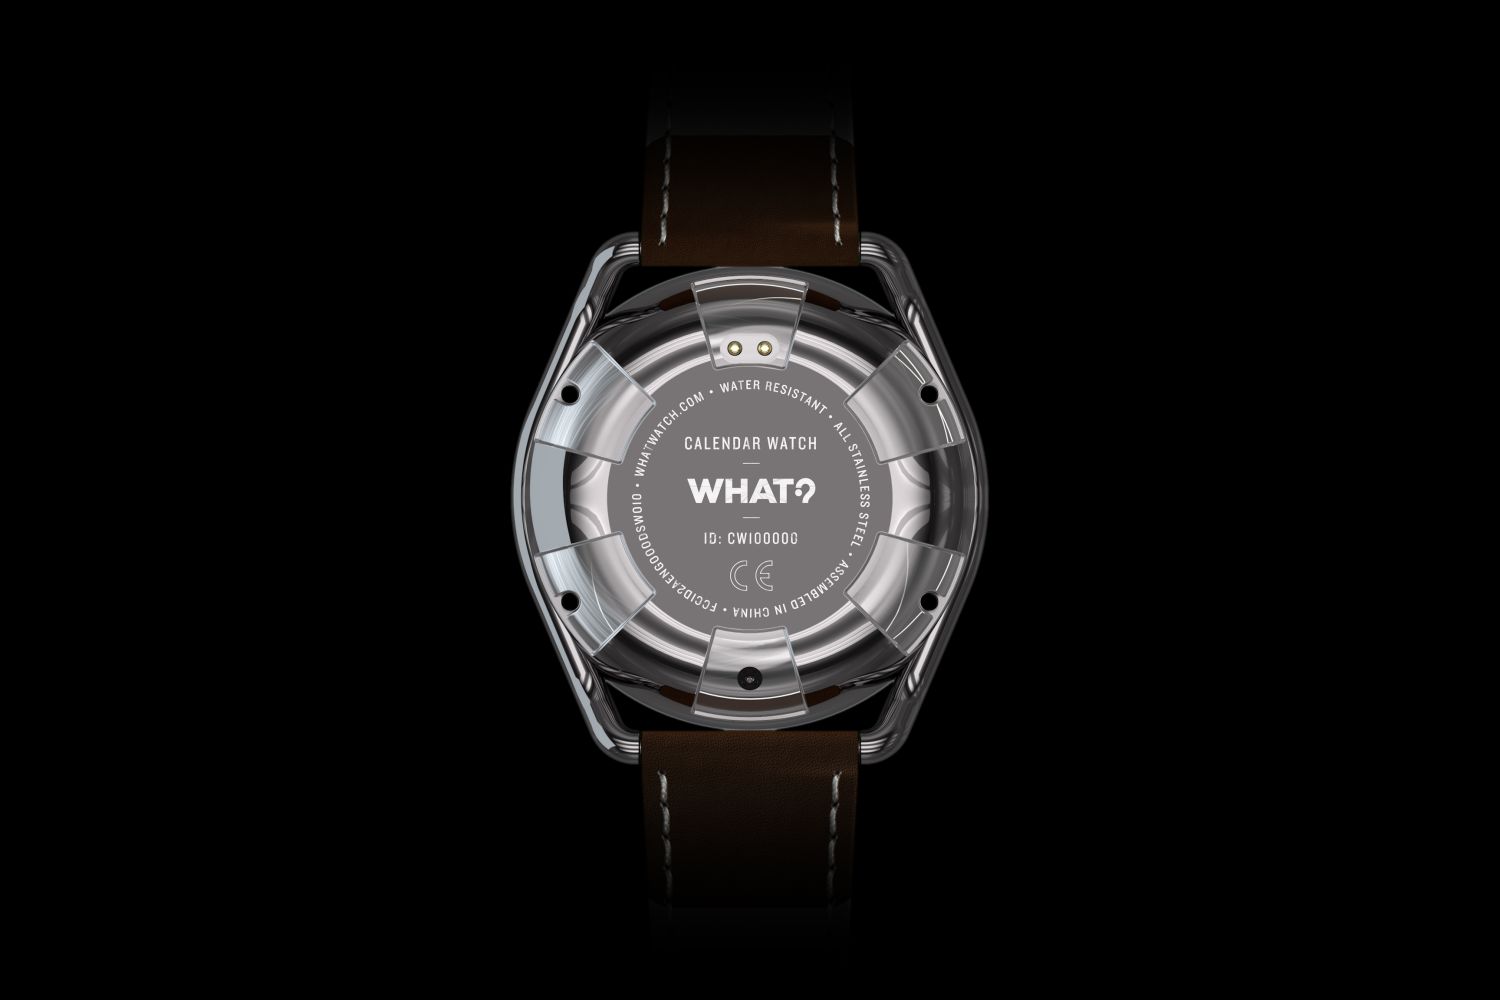 Calendar Watch, smart watch, What?